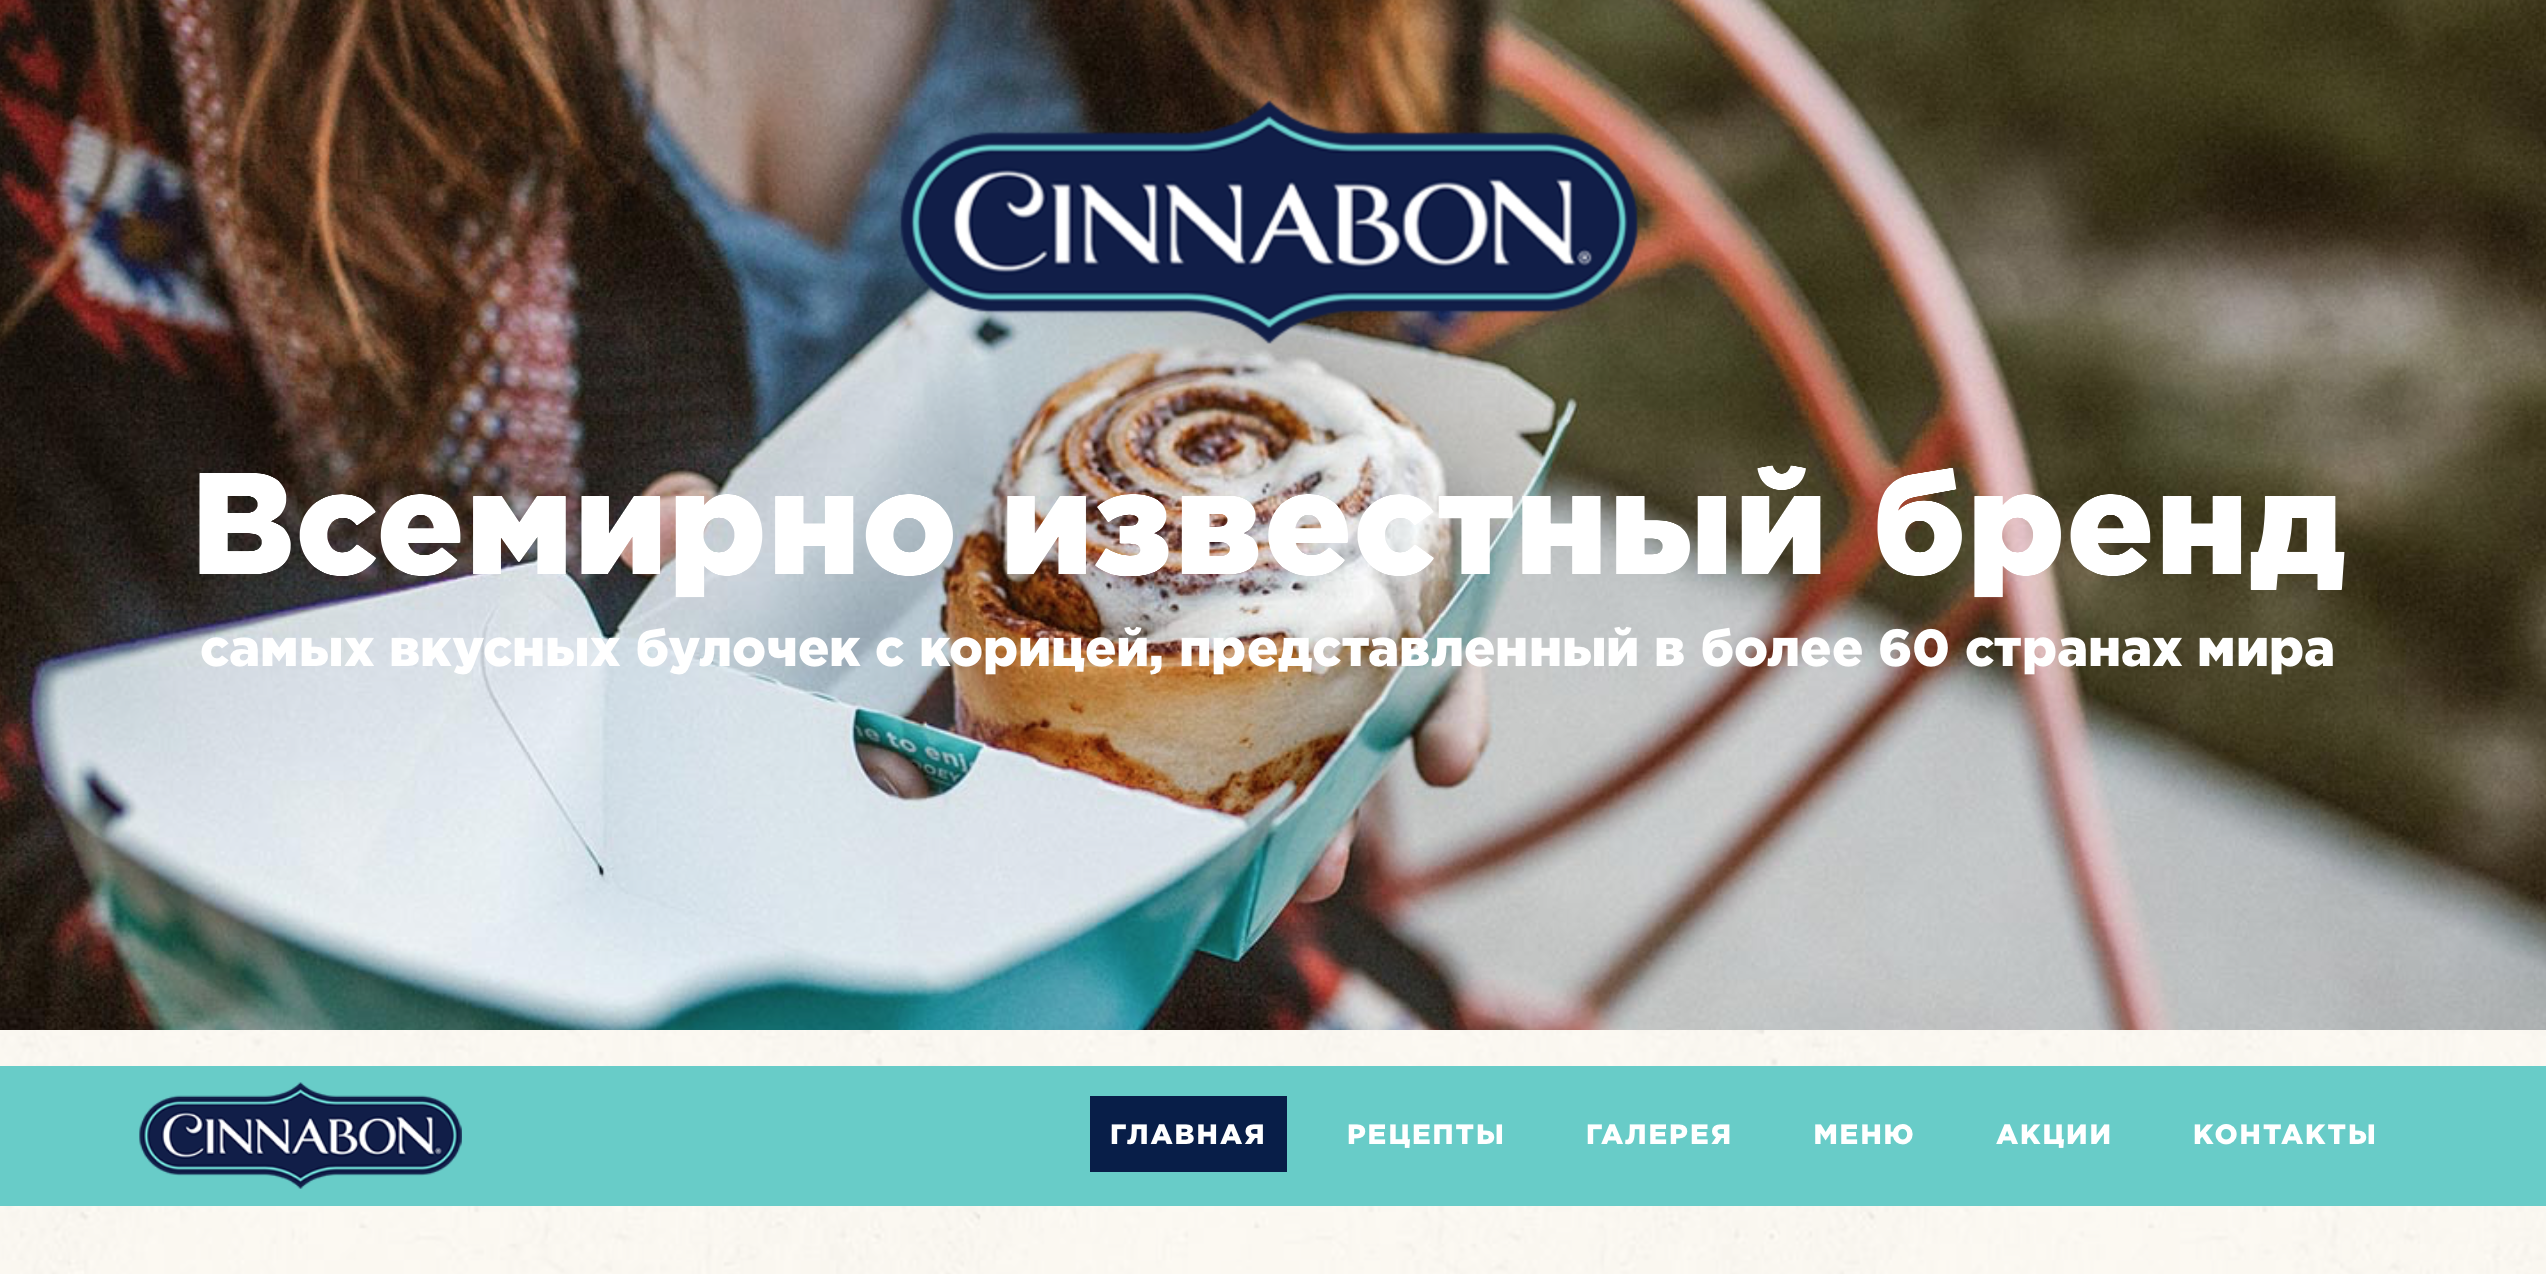 cinnabon - всемирно известный бренд булочек с корицей